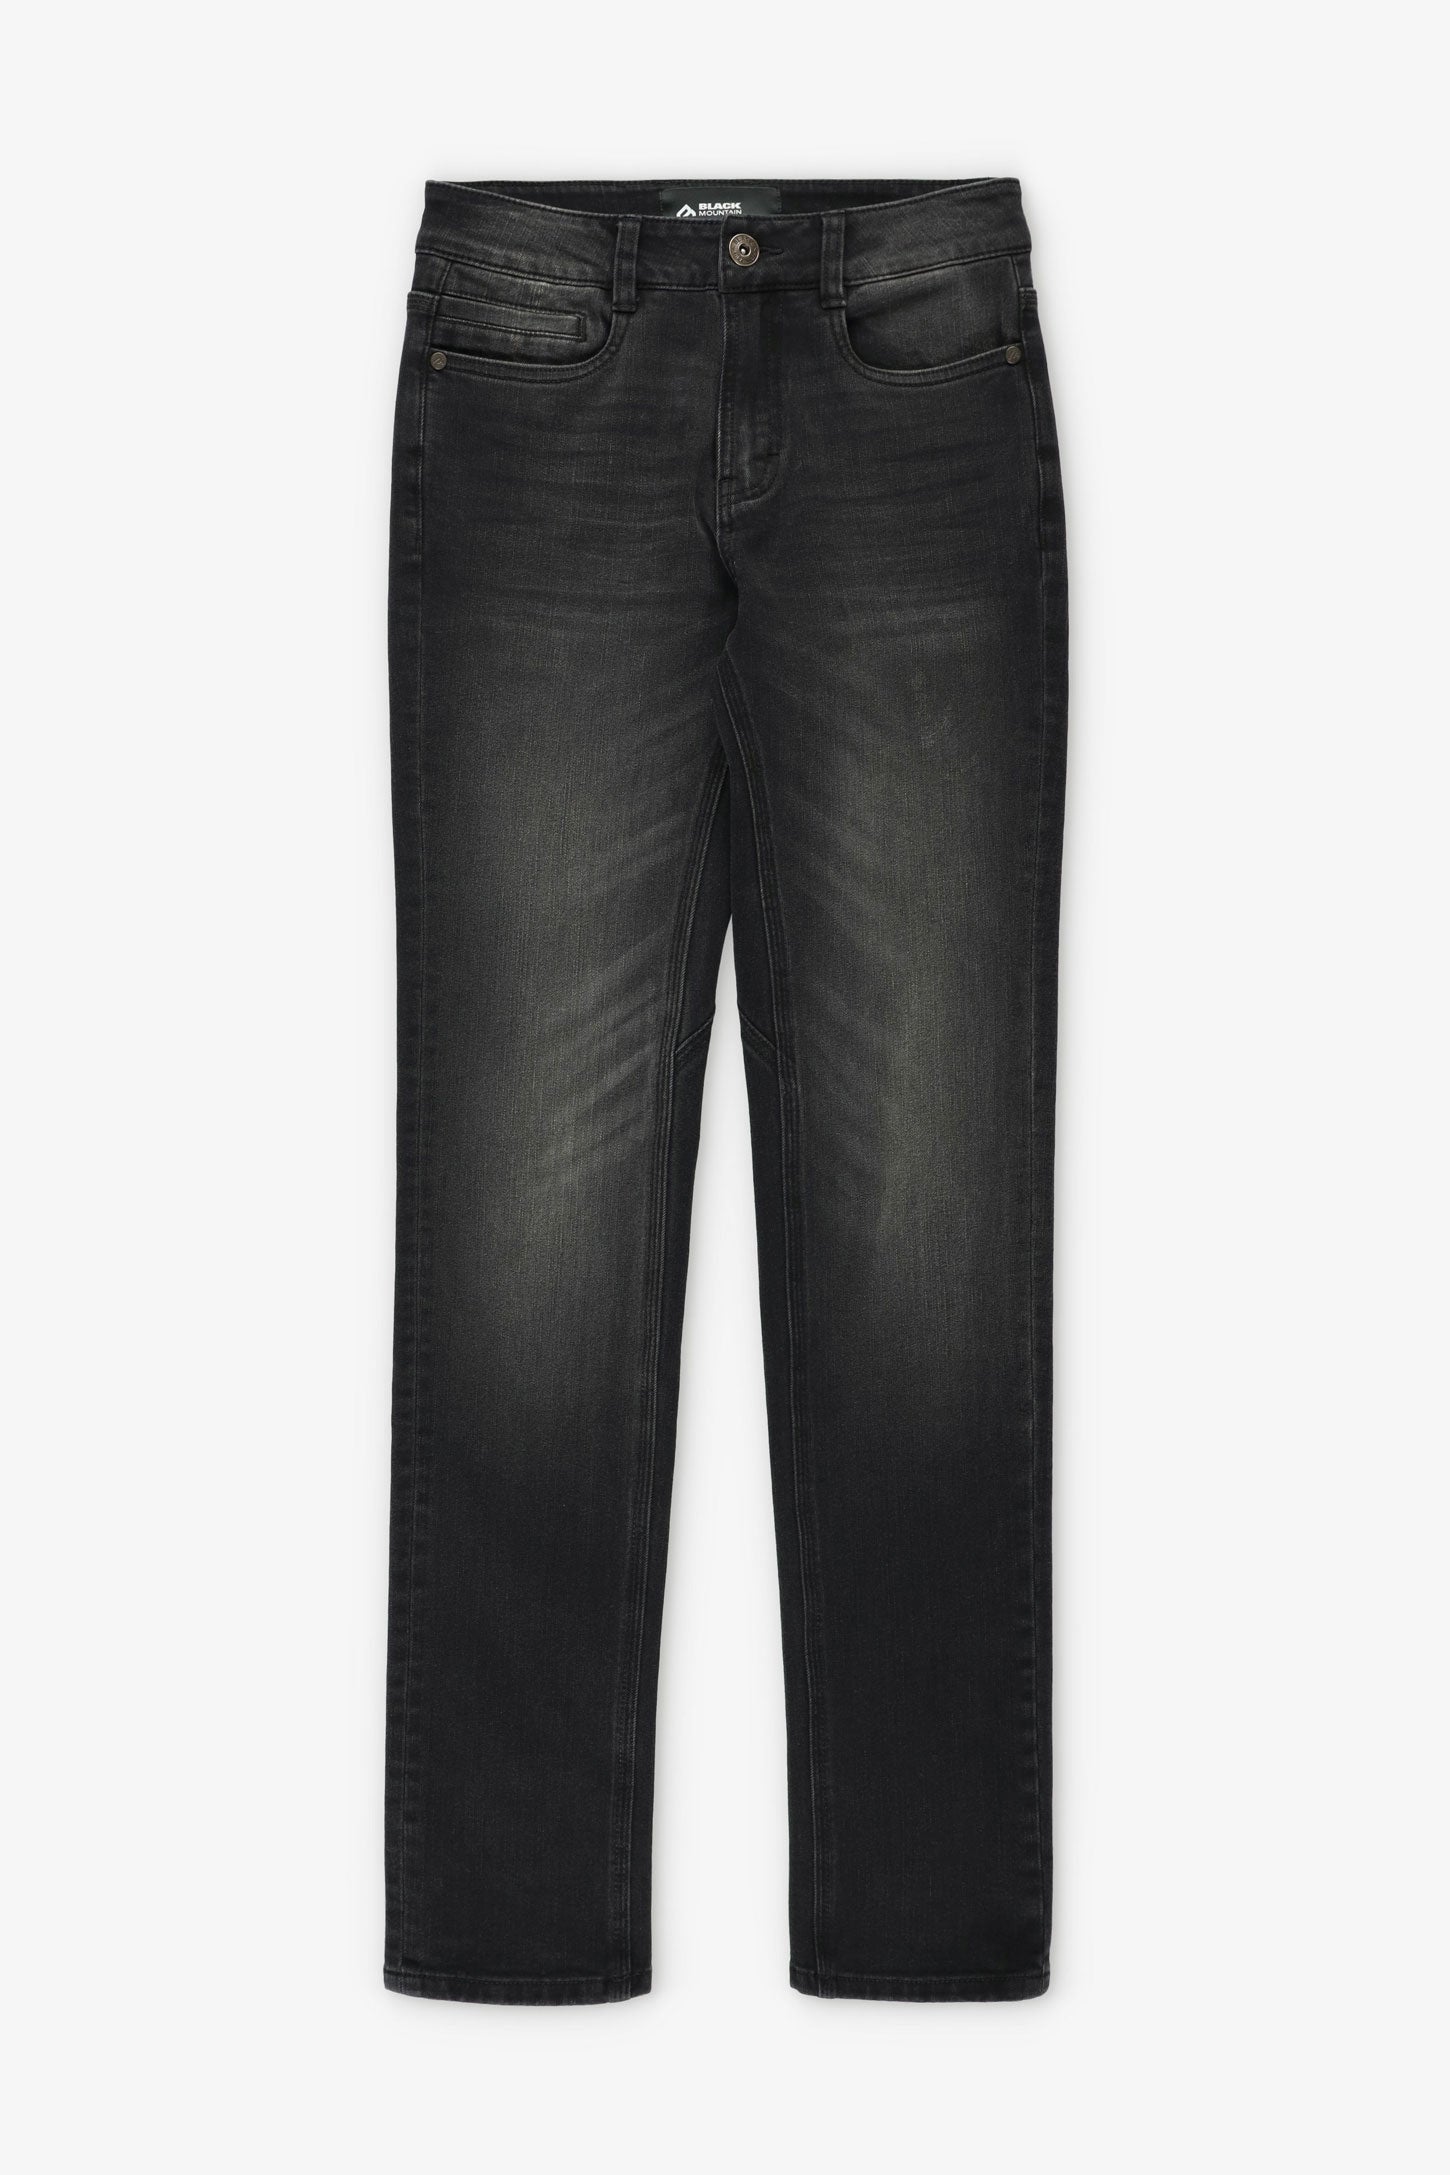 EXTENSION DE TAILLE extensible pour femmes hommes jeans 12 pièces bouton  métal EUR 9,90 - PicClick FR